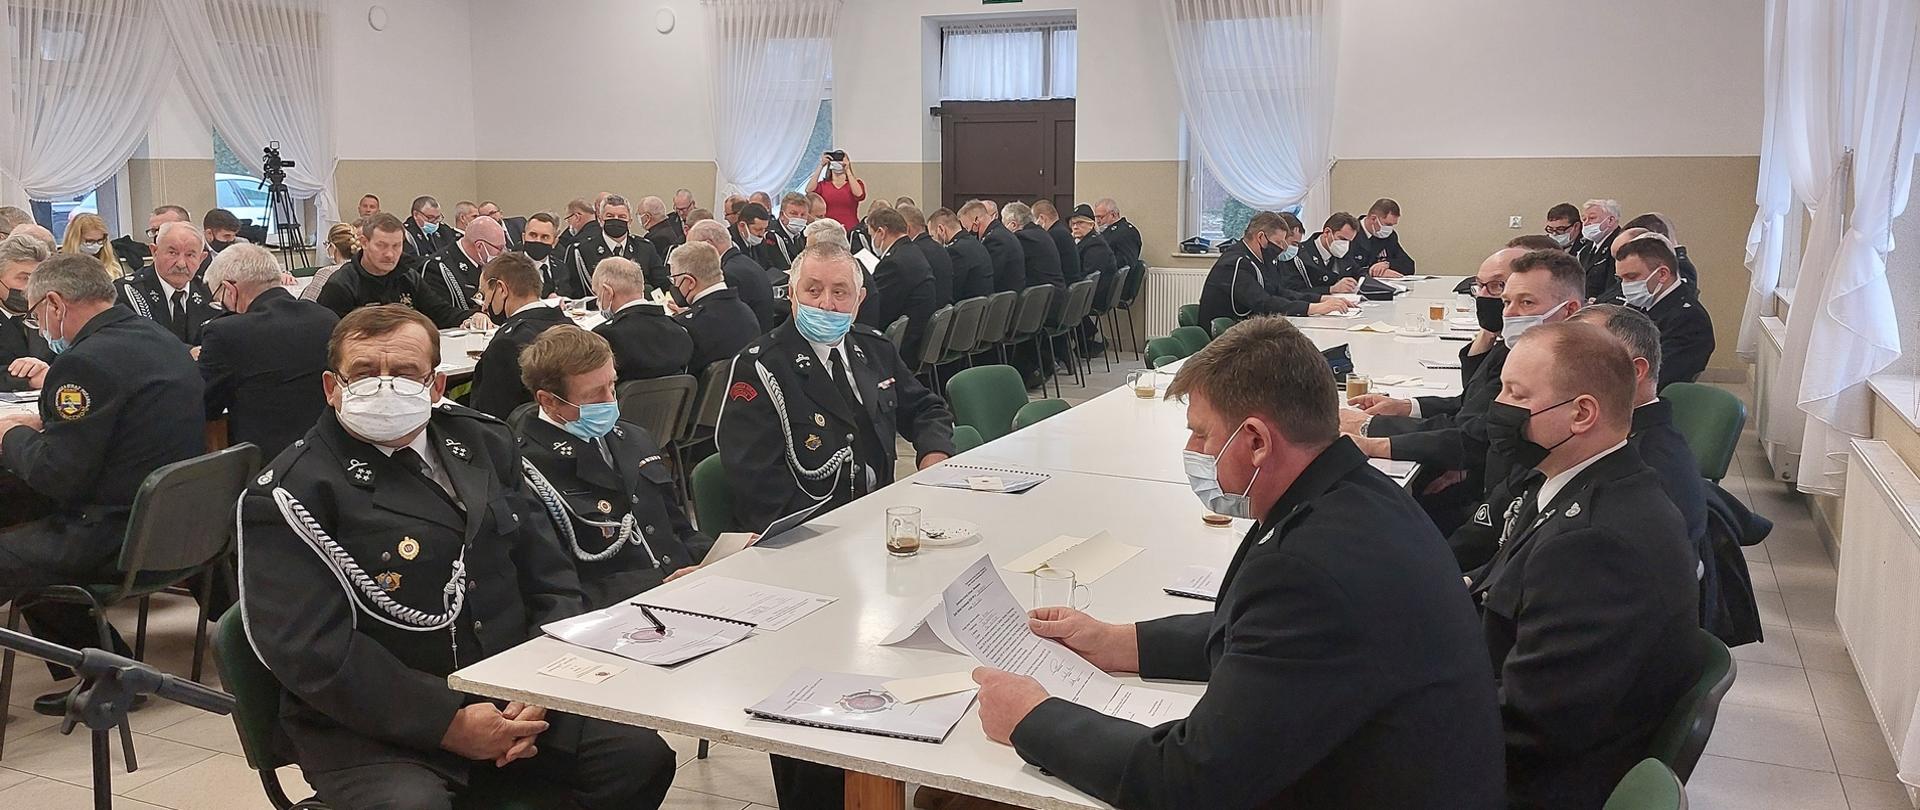 Zdjęcie przedstawia siedzących przy stołach uczestników V Zjazdu Zarządu Oddziału Powiatowego Związku Ochotniczych Straży Pożarnych RP w Brodnicy